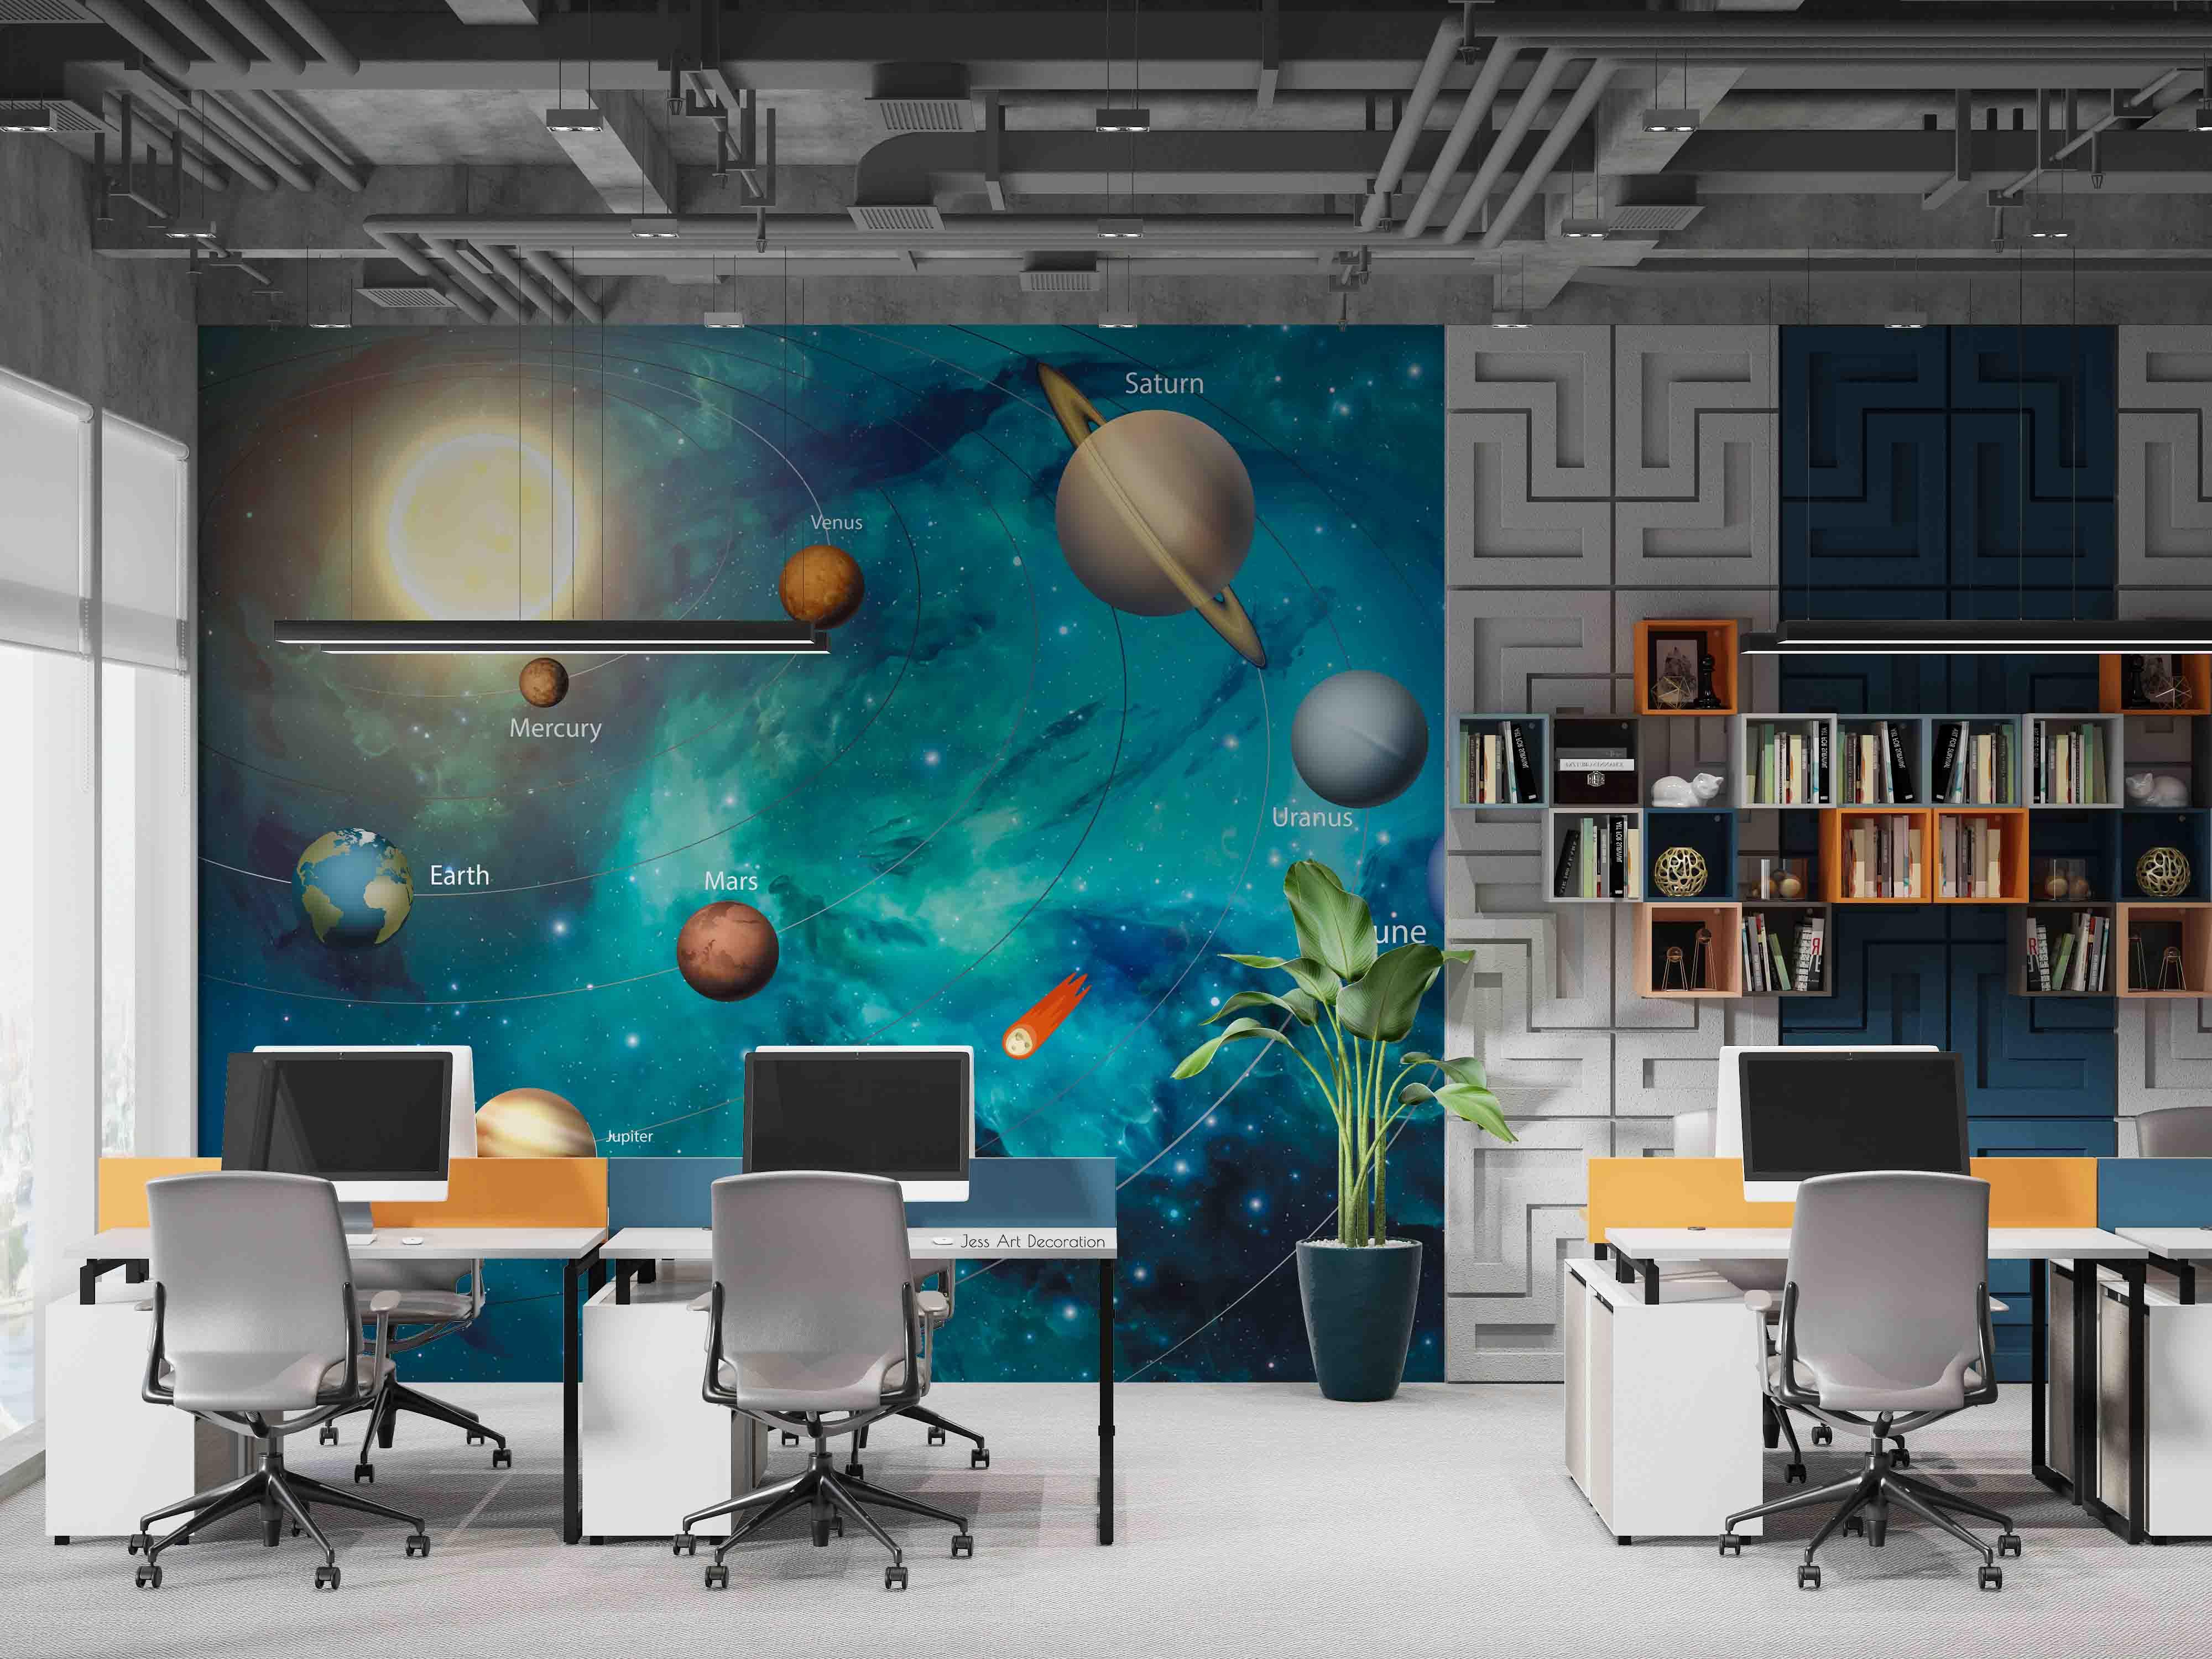 3D Blue Space Planet Orbit Wall Mural Wallpaper GD 2784- Jess Art Decoration